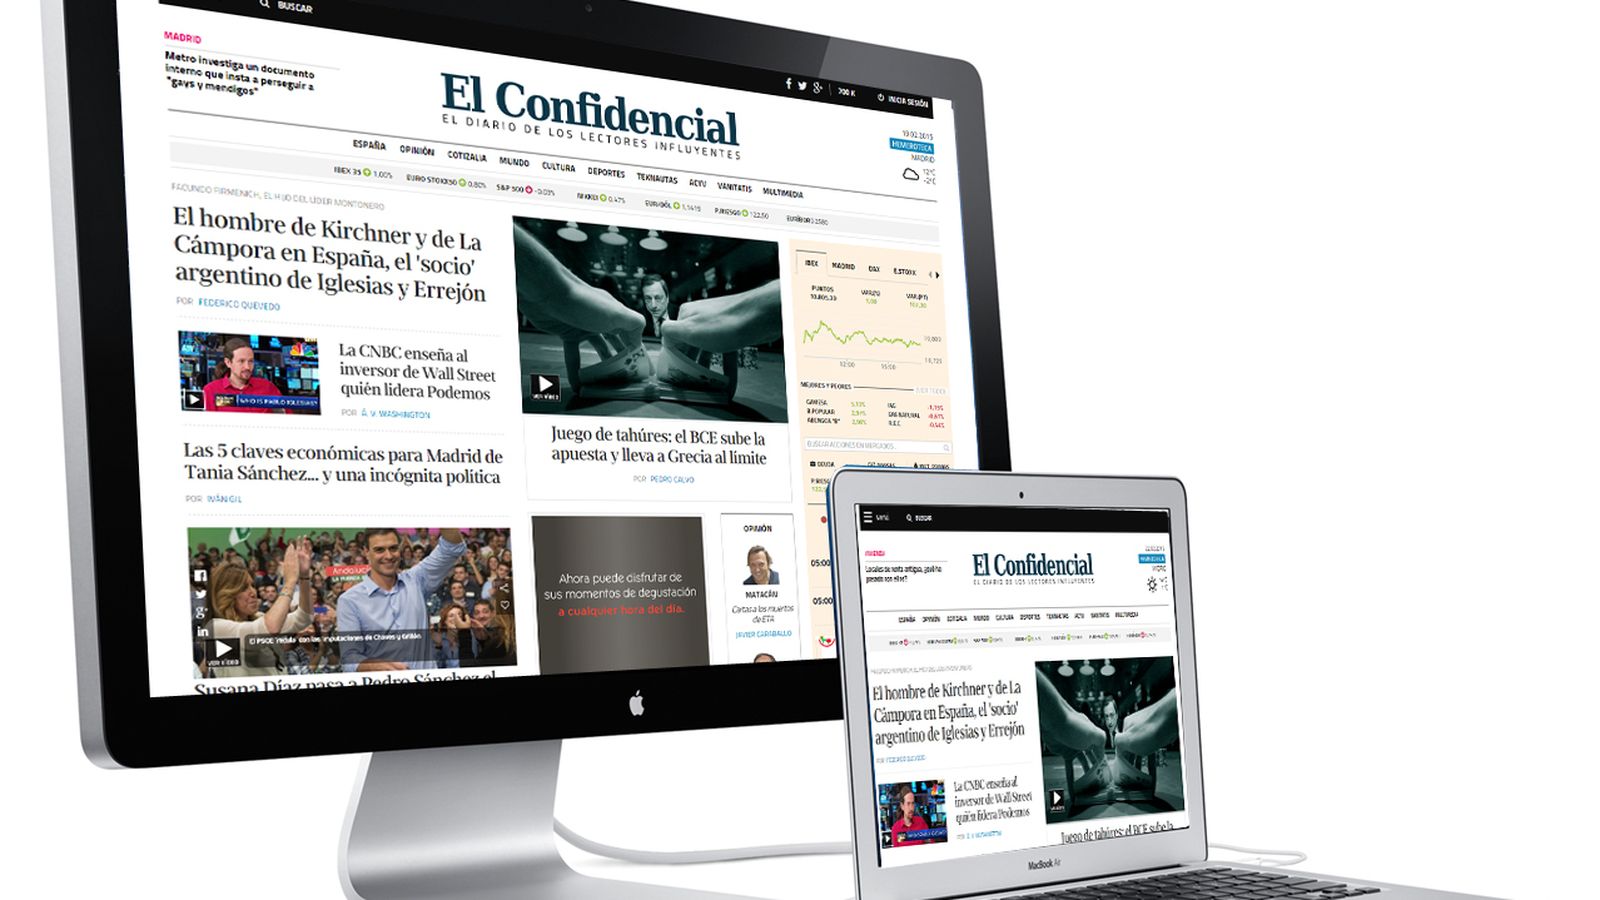 Foto: Los dos formatos de portada de El Confidencial, según la resolución del dispositivo